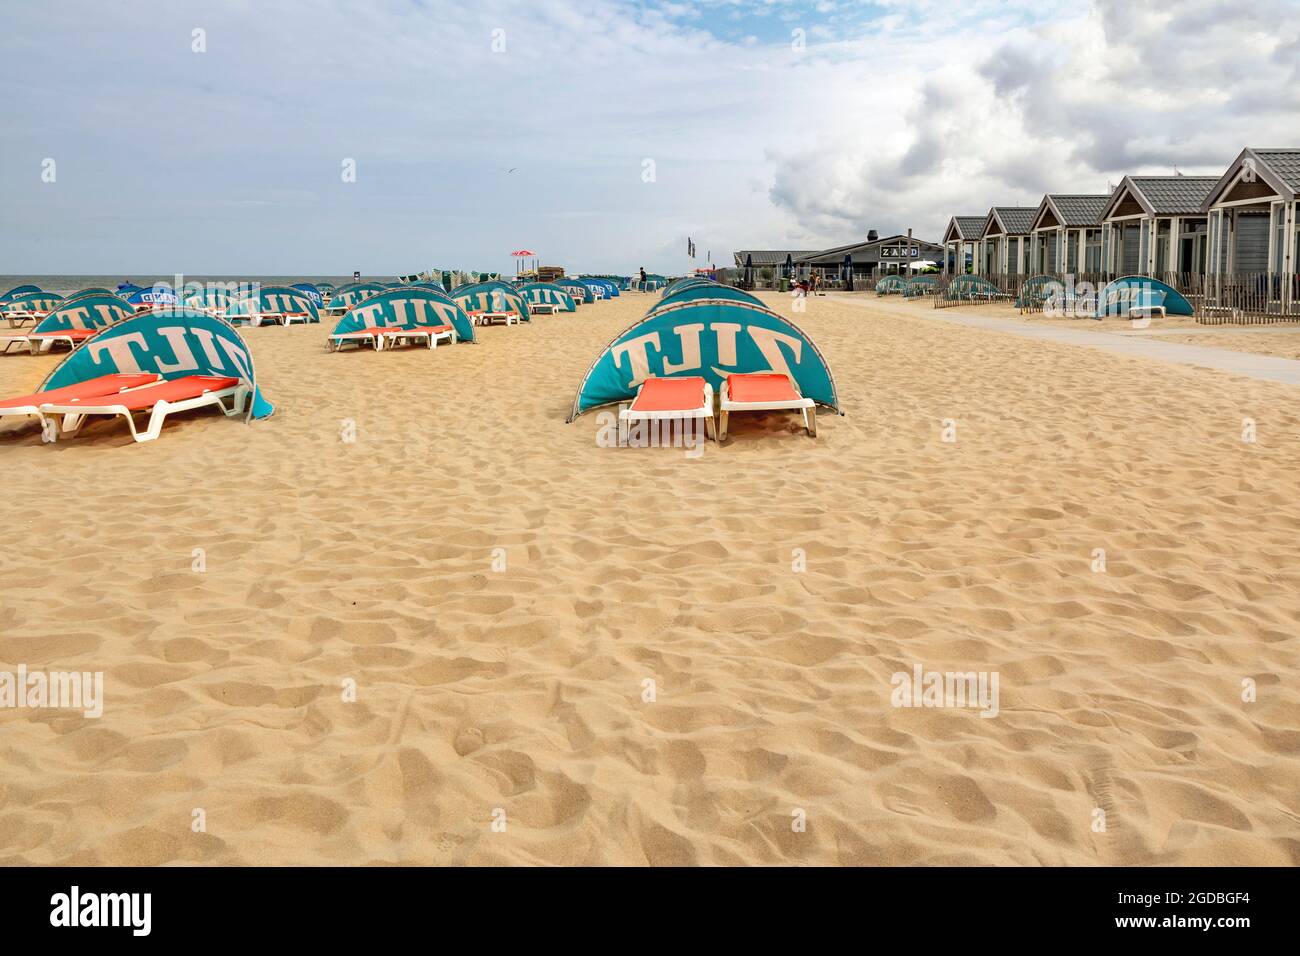 Playa en el entorno de verano, adornada con chalets, cortavientos, tumbonas, esperando visitantes, Katwijk, Holanda del Sur, Países Bajos. Foto de stock